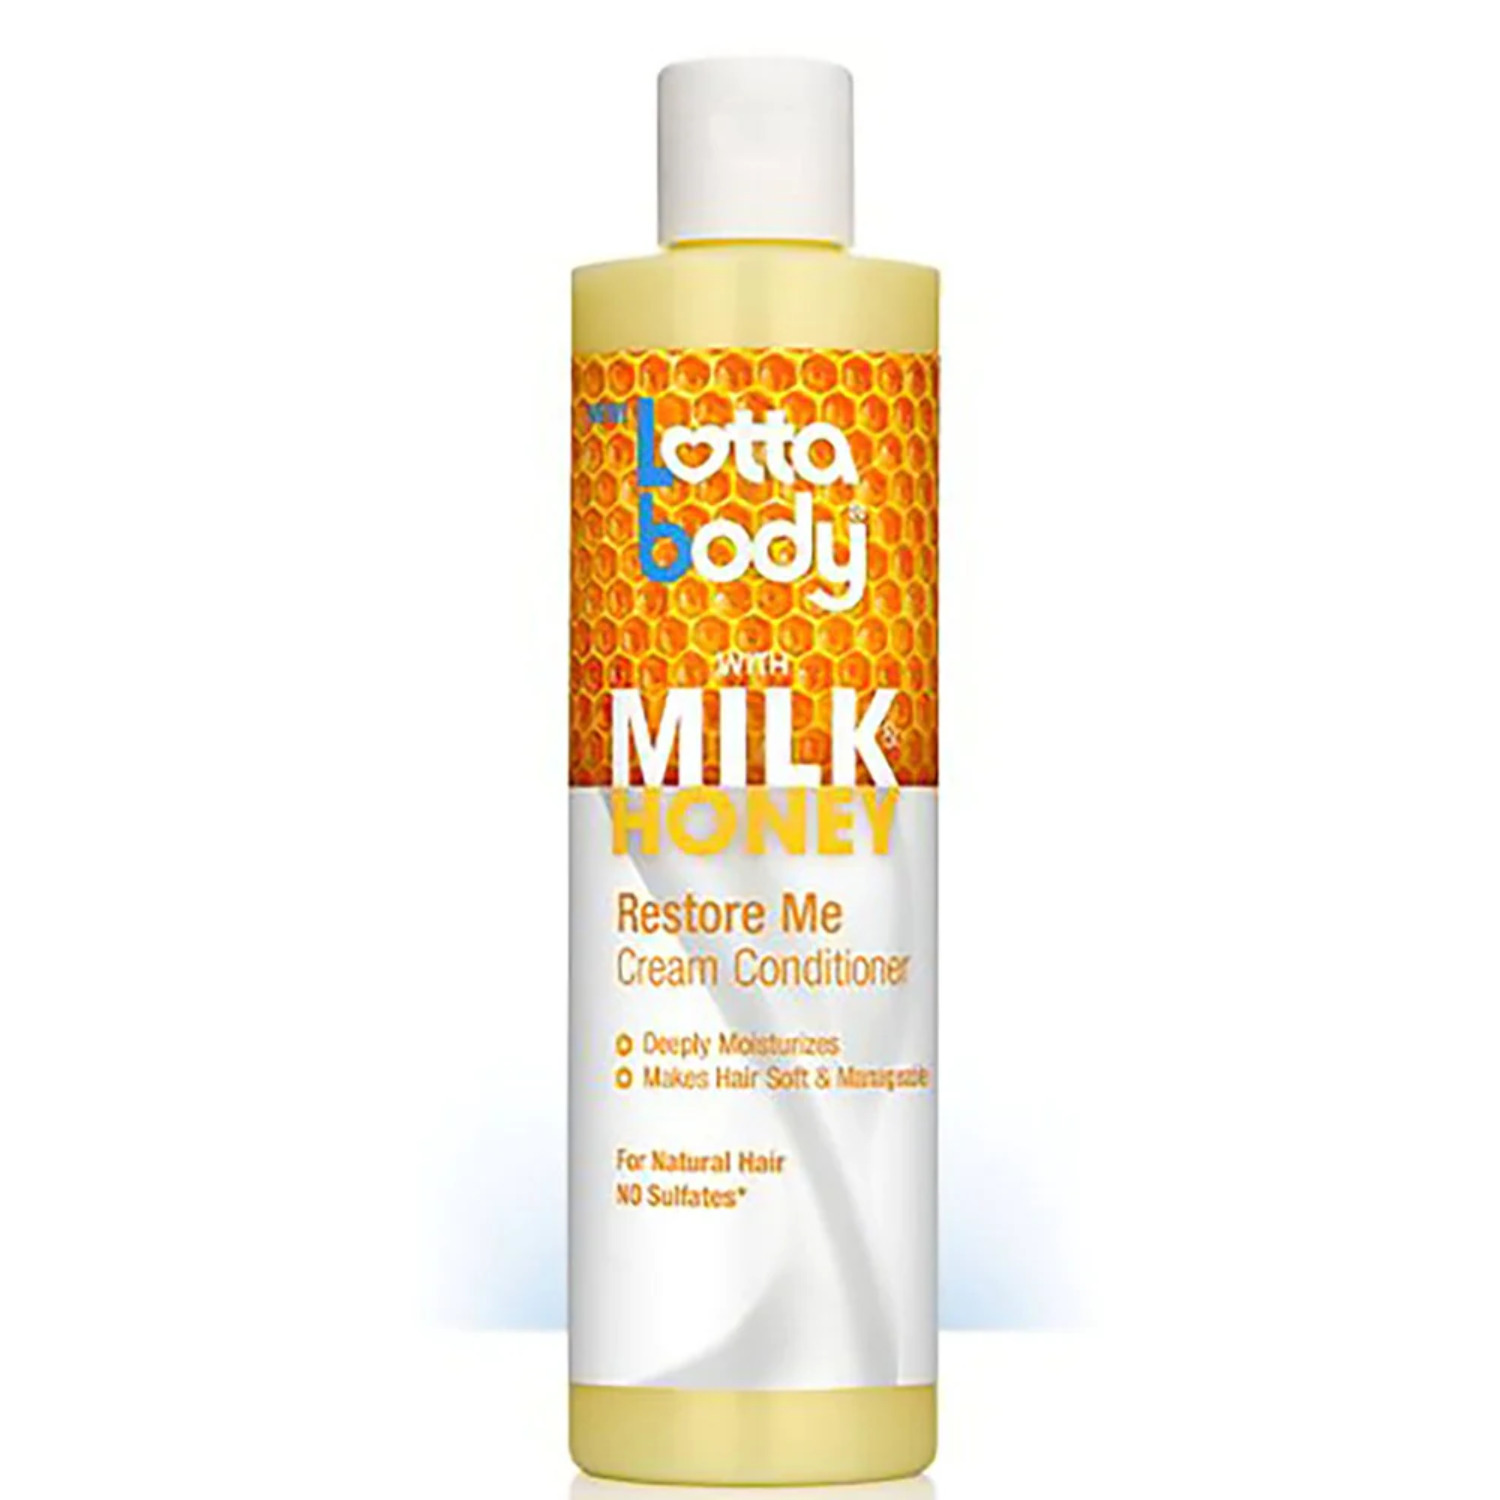 Lotta Body - Milk Honey Restore Me Cream Conditioner - image 1 of 2